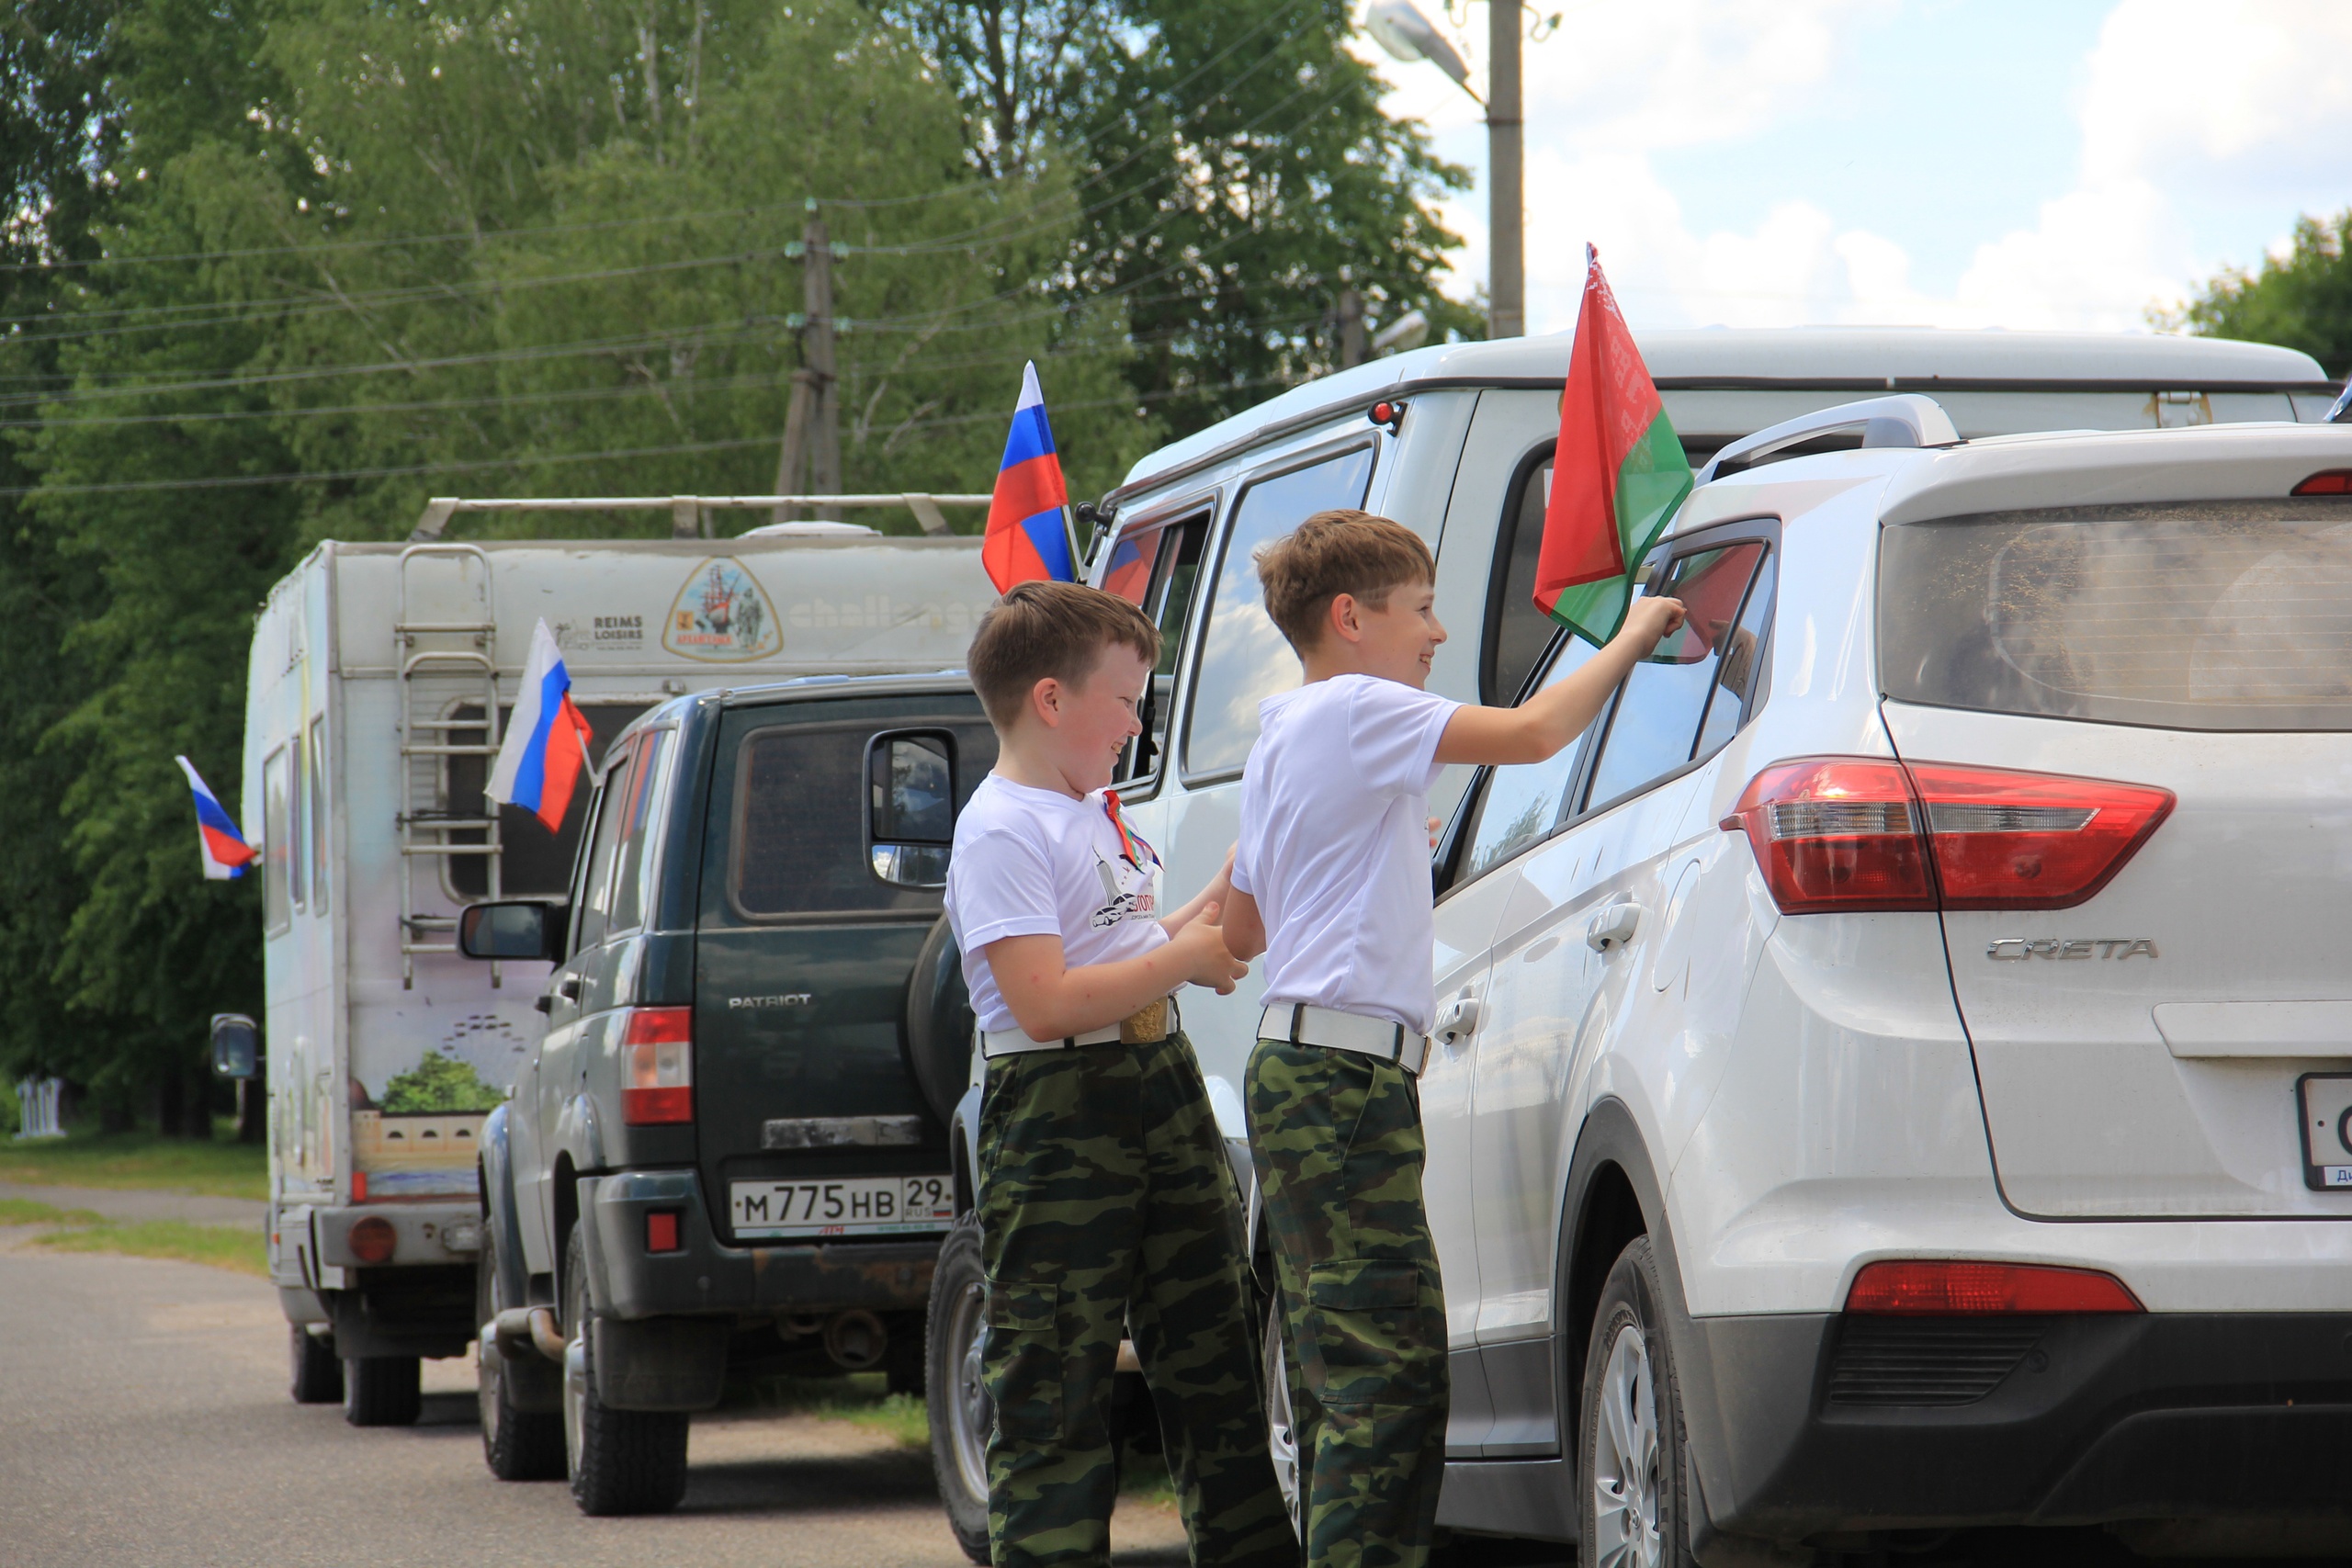 Каждый июнь воспитанники центра вместе со взрослыми ездят в автопробег по Беларуси